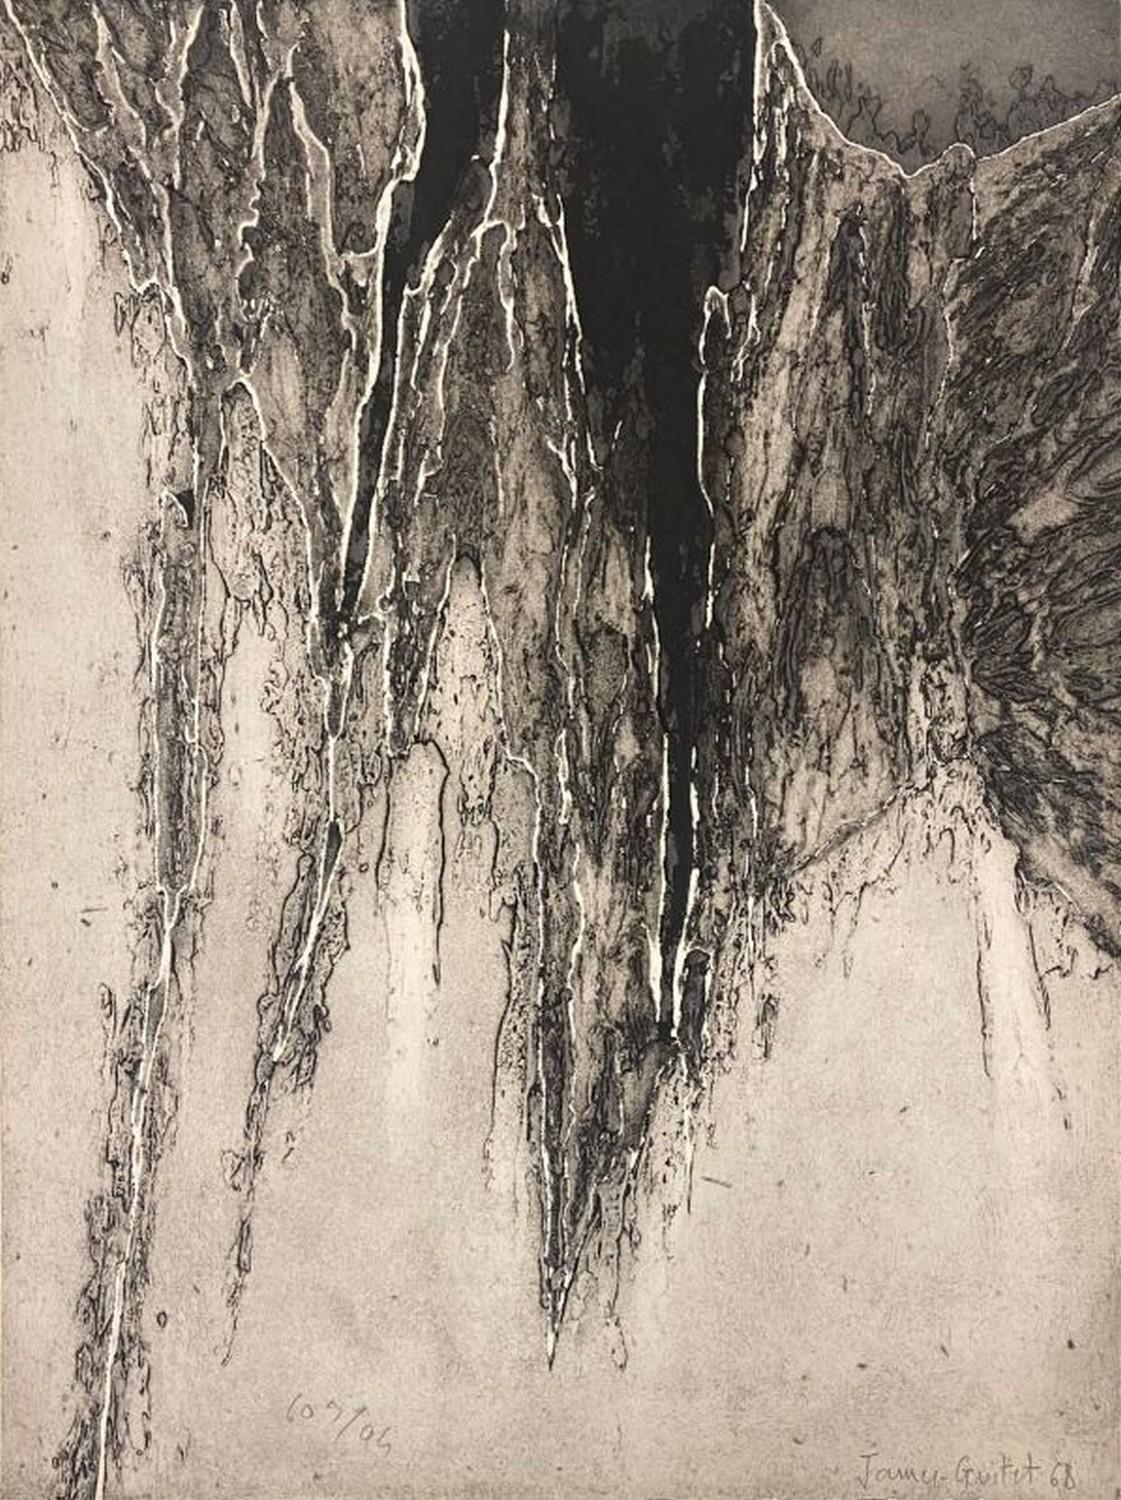 James Guitet Abstract Print – La peau des things